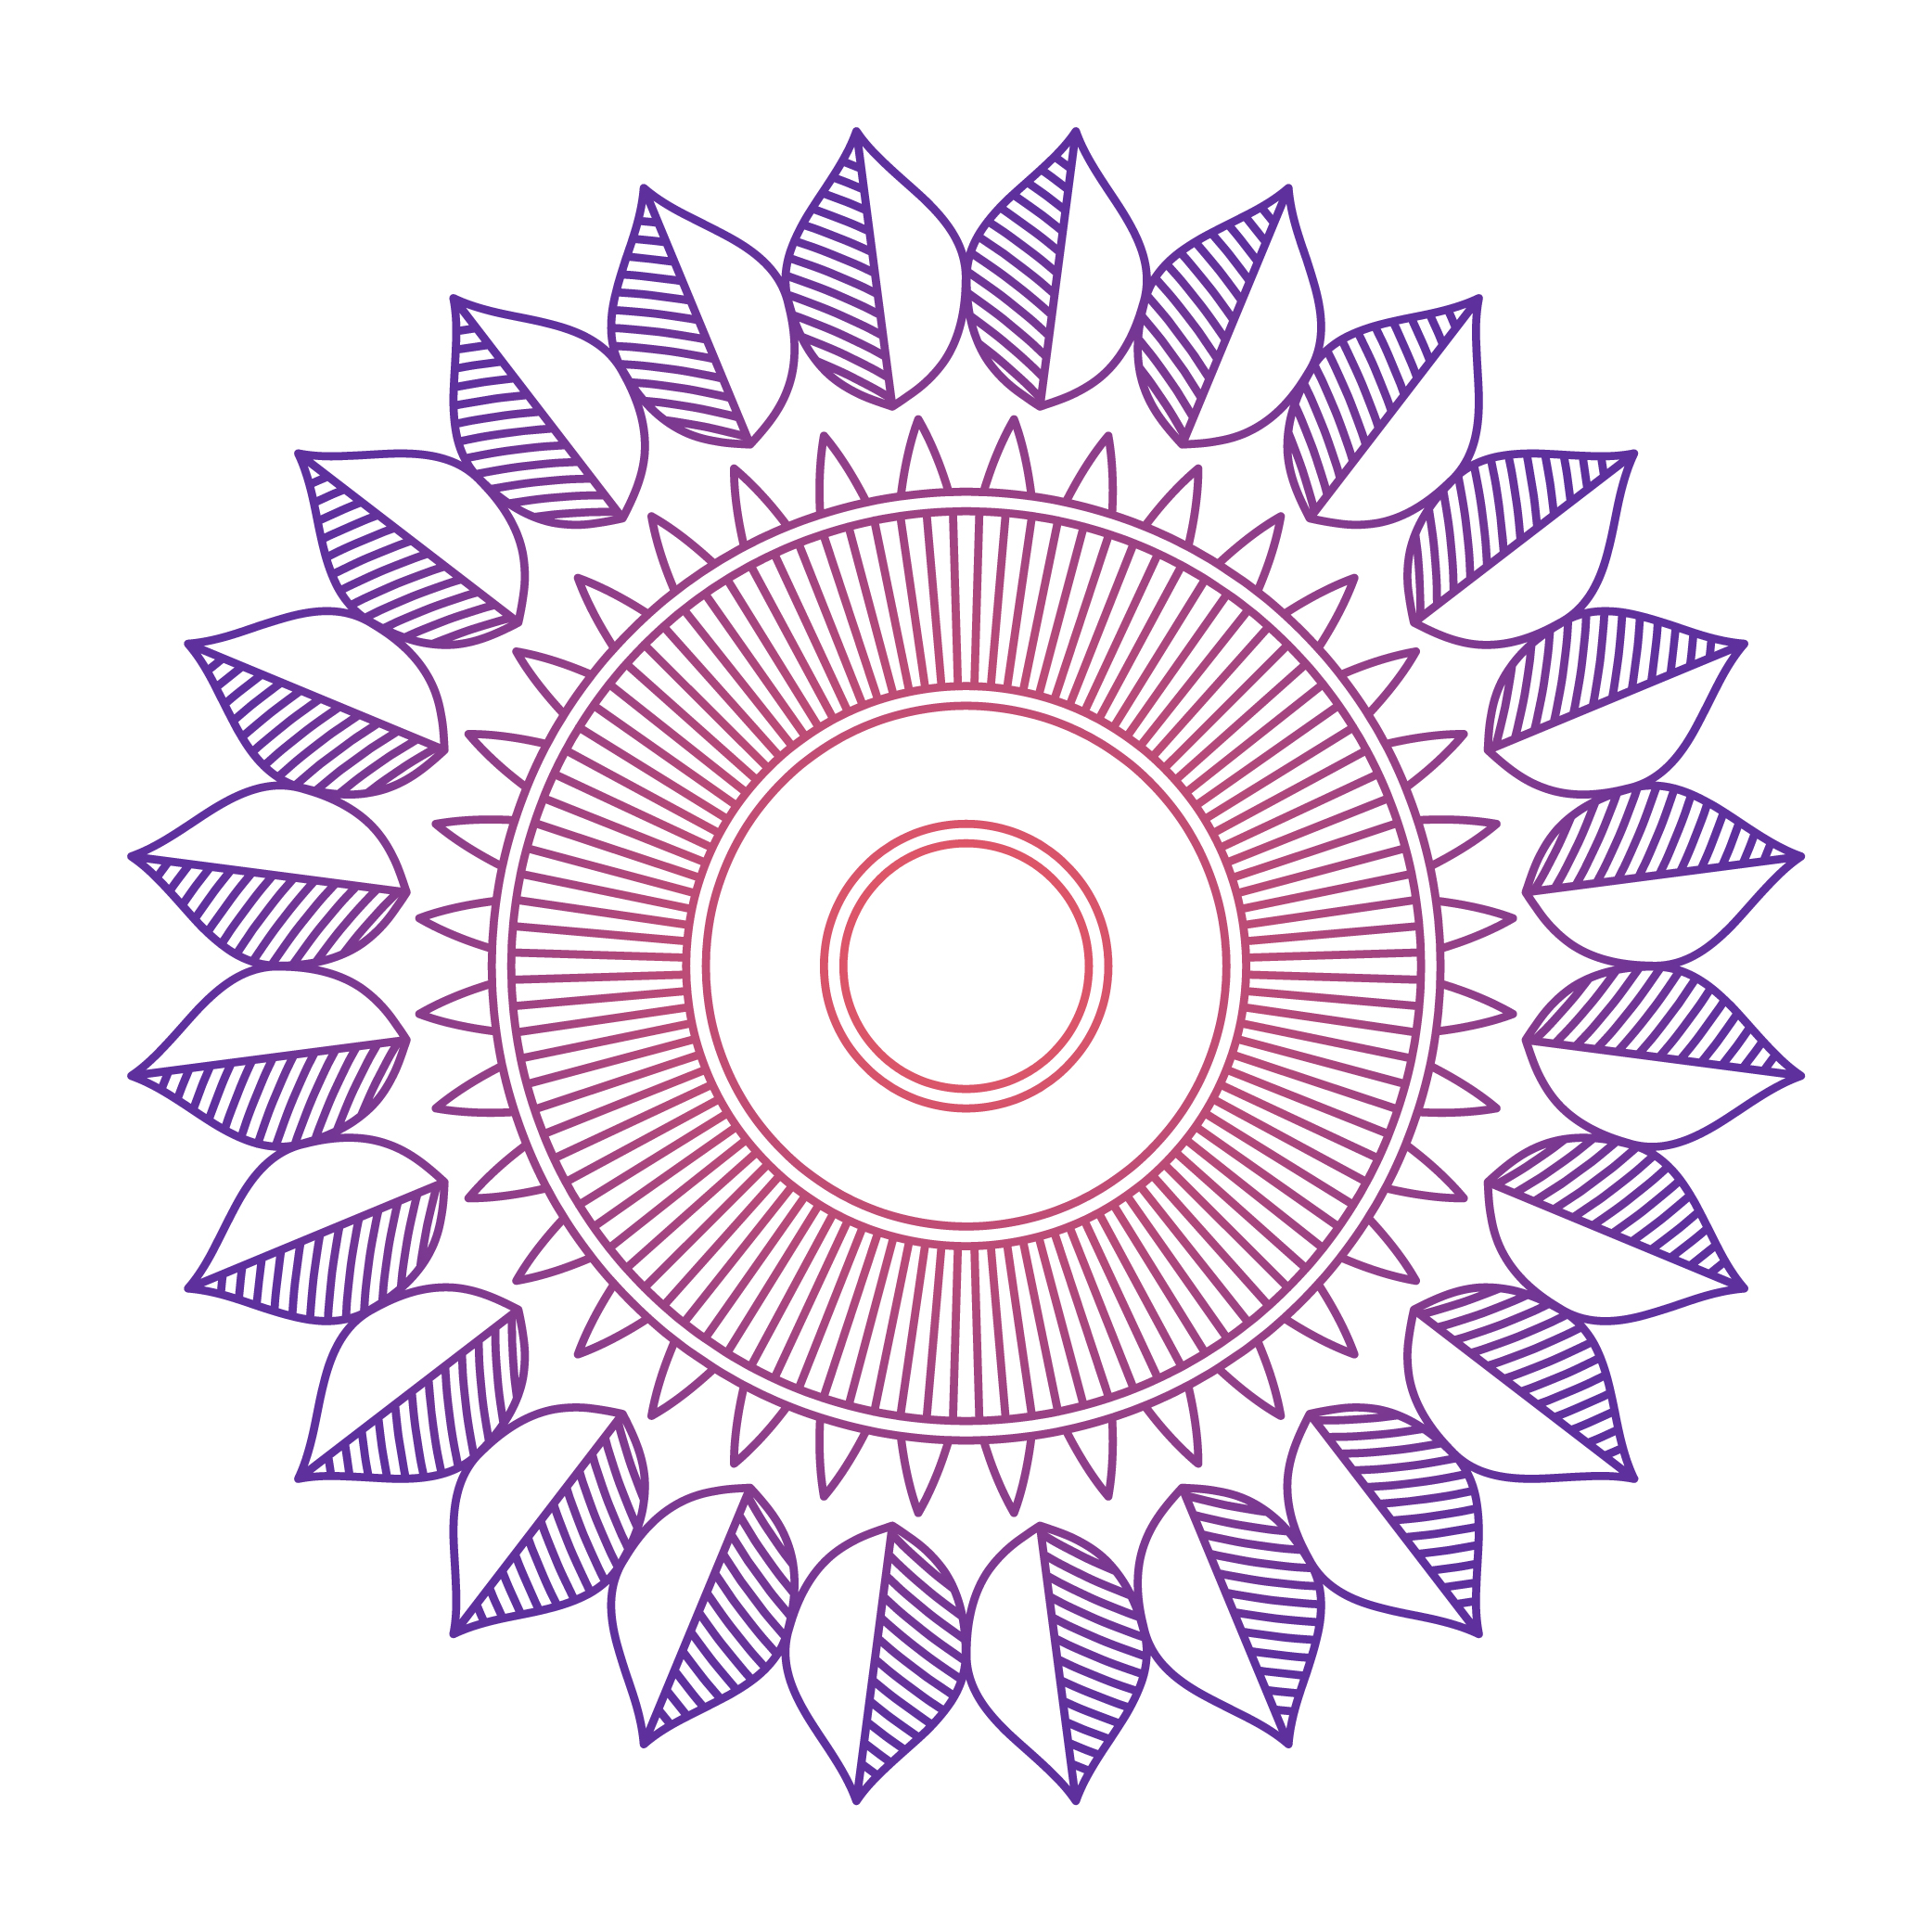 Download Mandala ornament vector image - Download Free Vectors ...